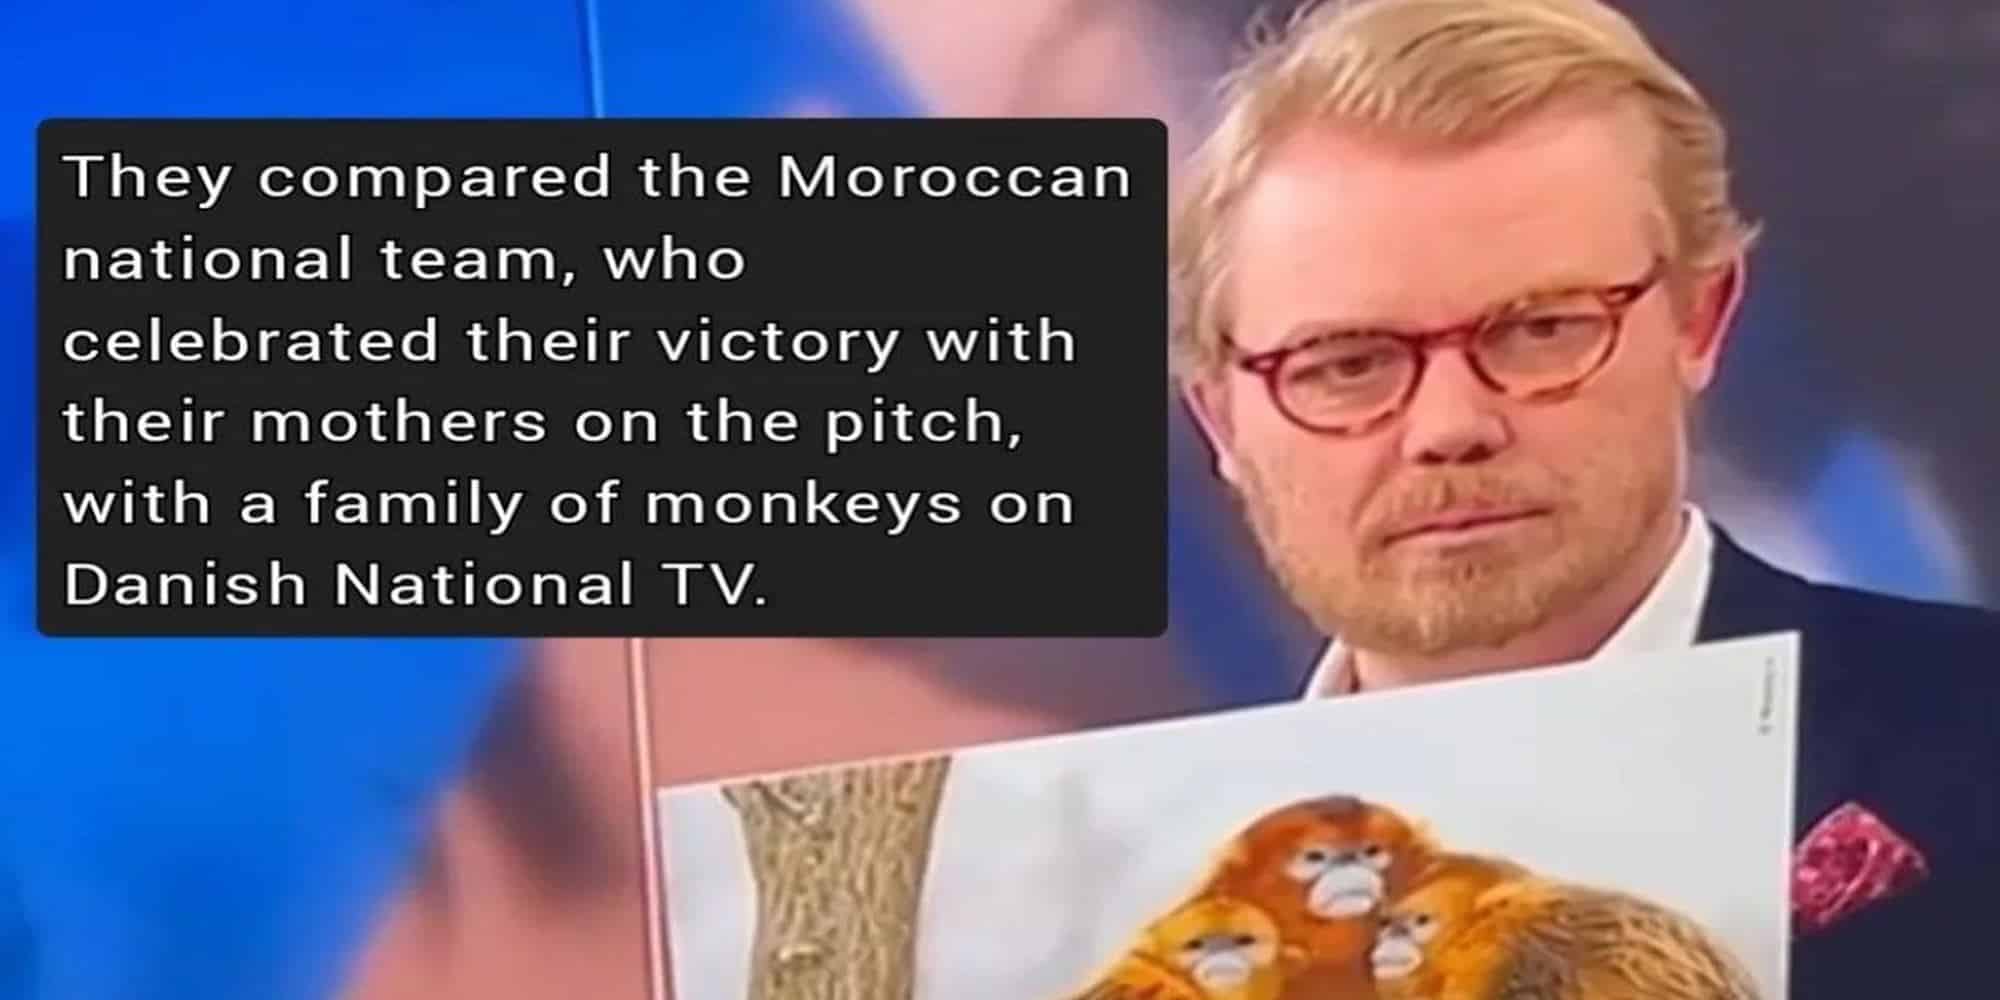 Ο Δανός δημοσιογράφος που παρομοίασε τους παίκτες του Μαρόκο με μαϊμούδες